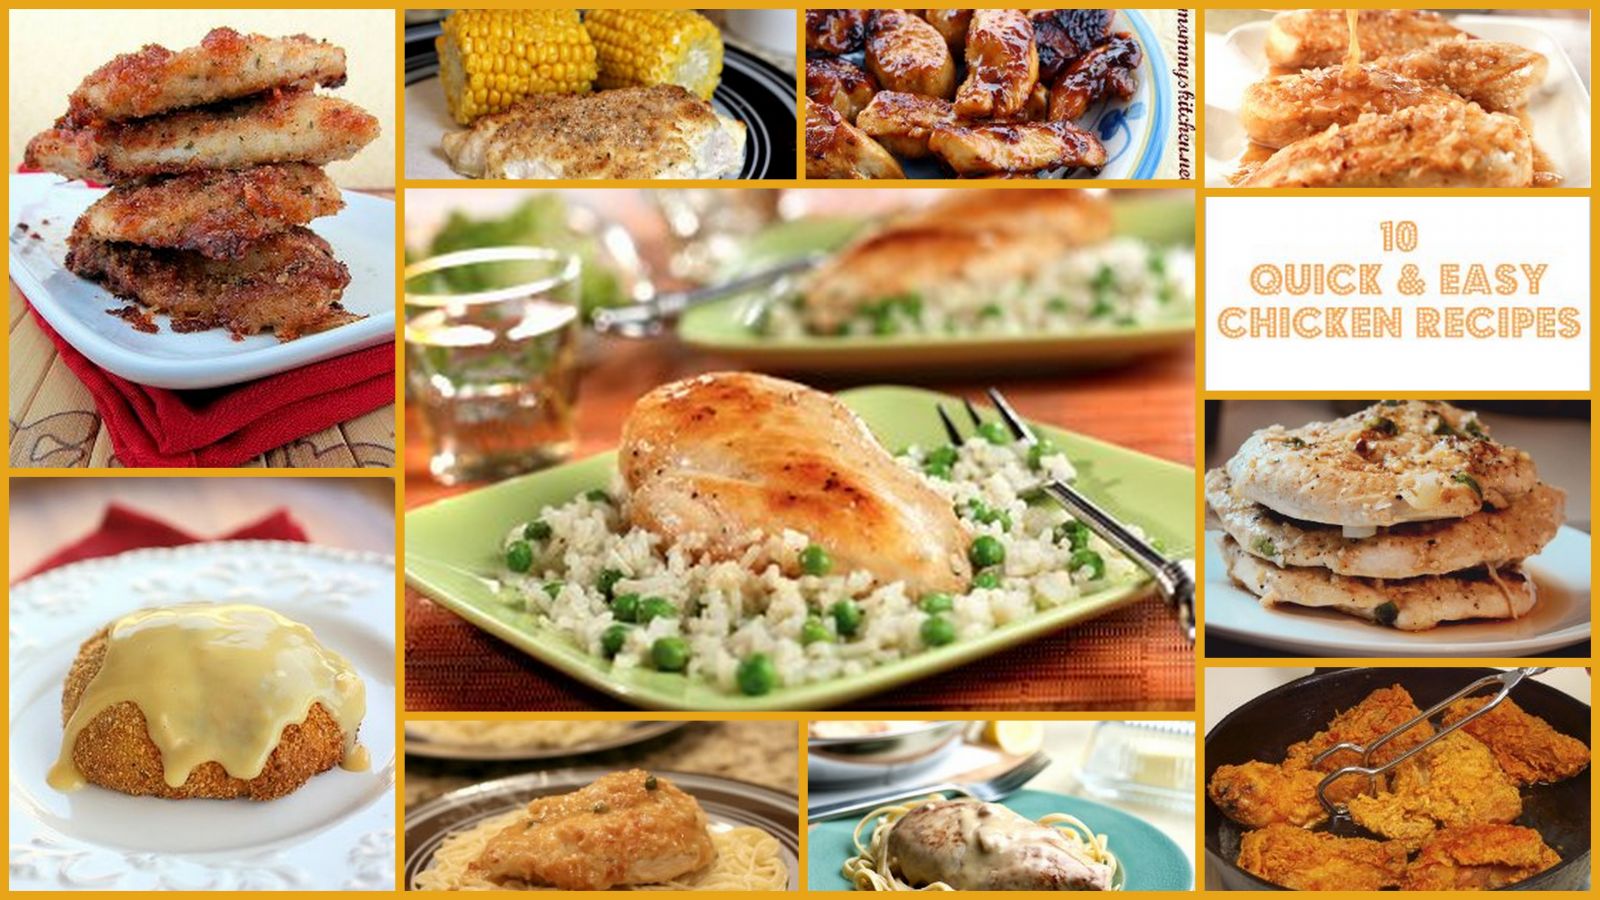 10 Quick and Easy Chicken Recipes | RecipeLion.com1600 x 900